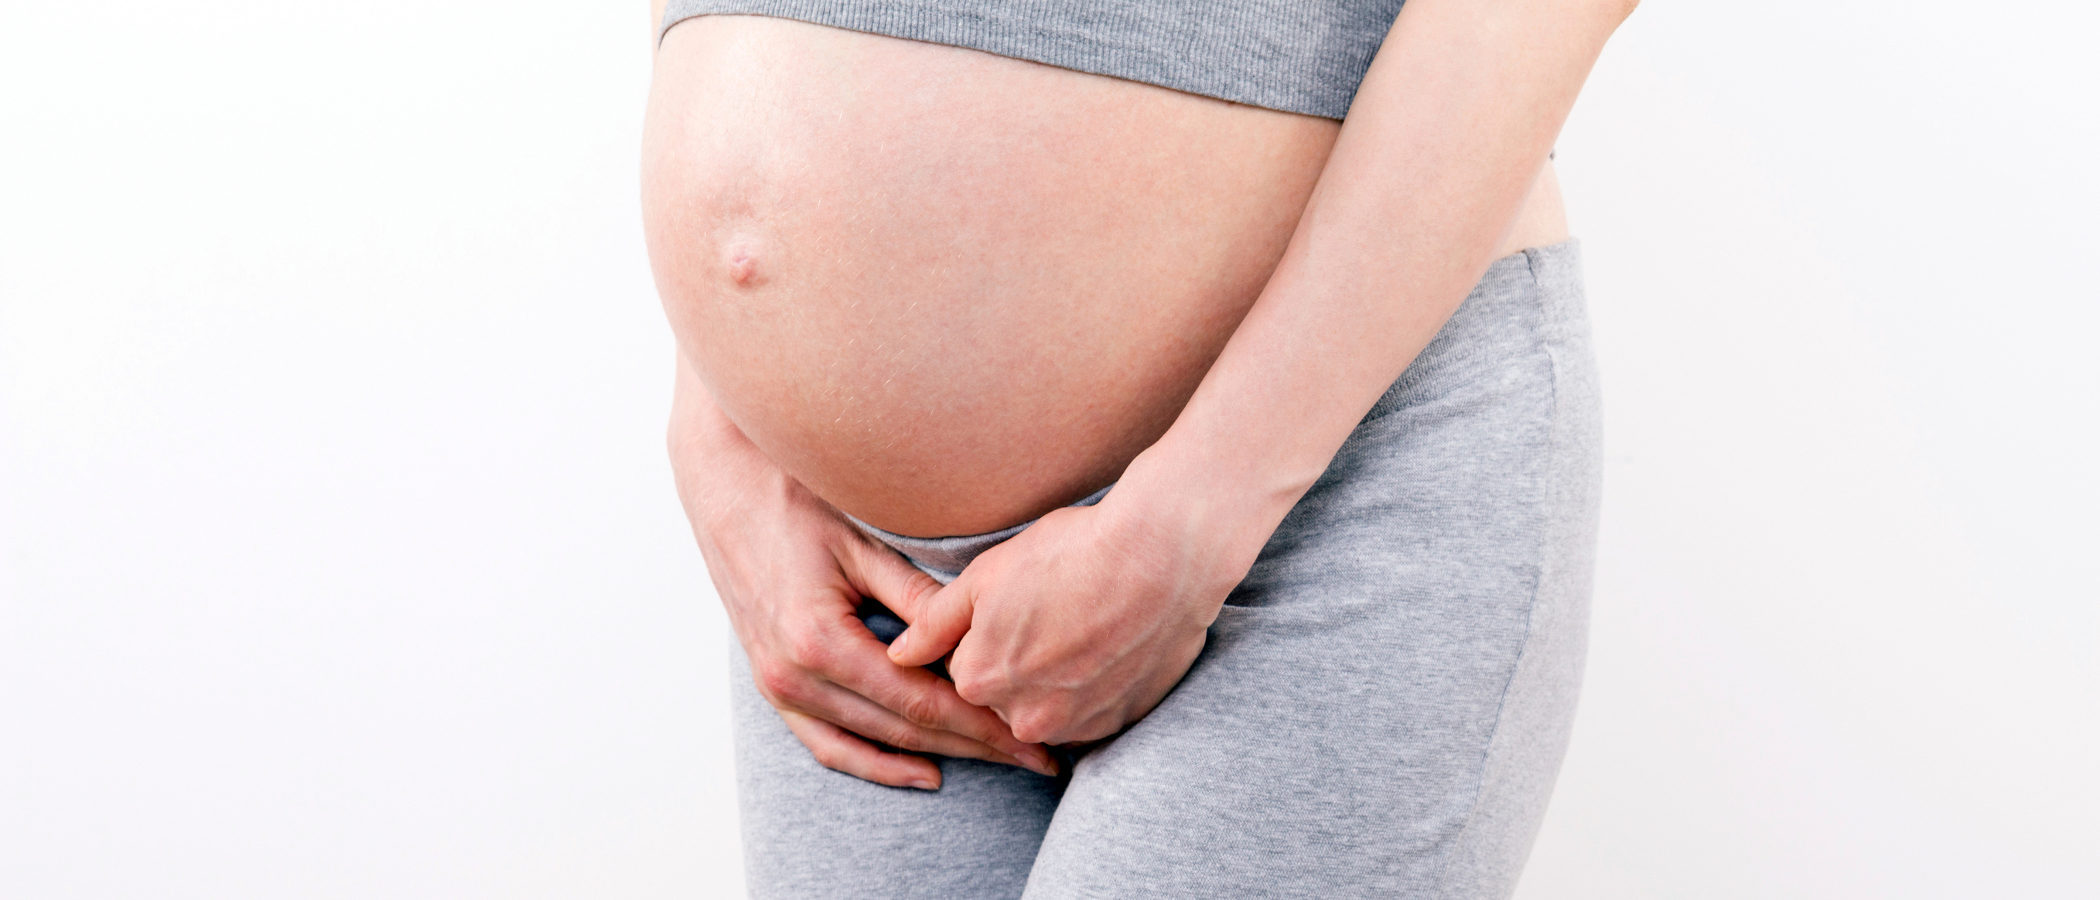 Remedios para aliviar las ganas de orinar constantes durante el embarazo